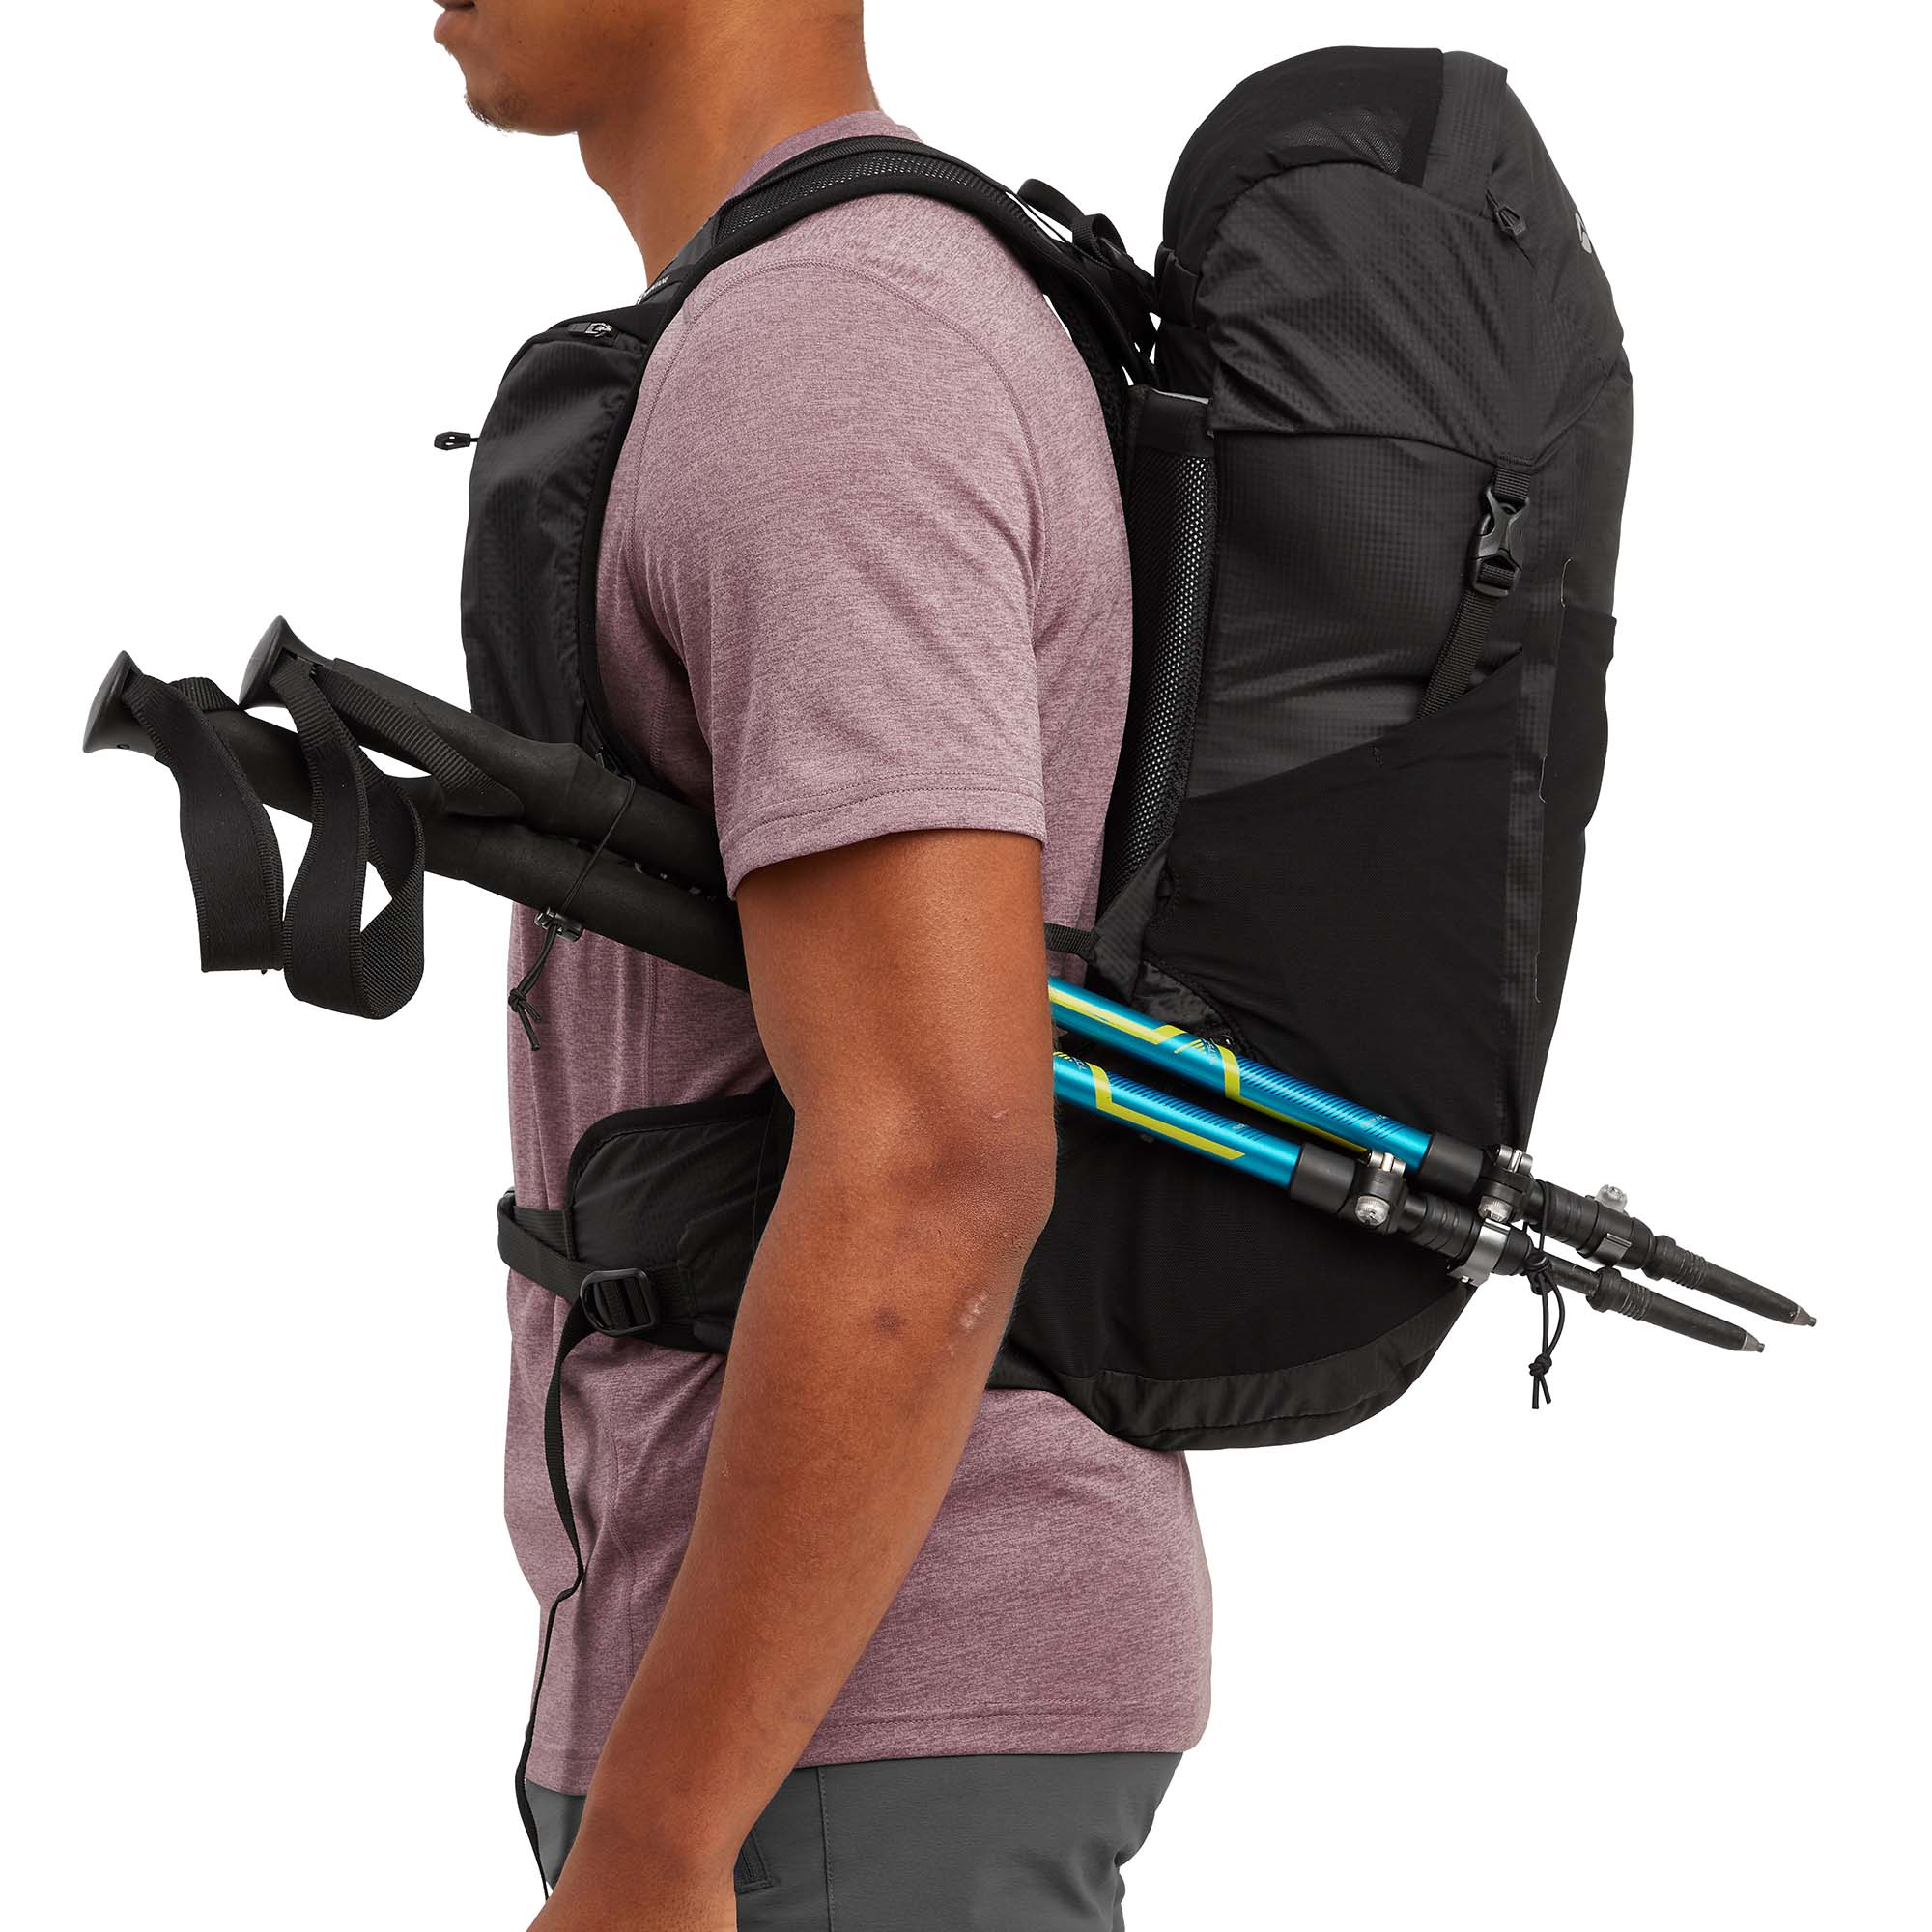 Montane Trailblazer 25L Trekking Backpack